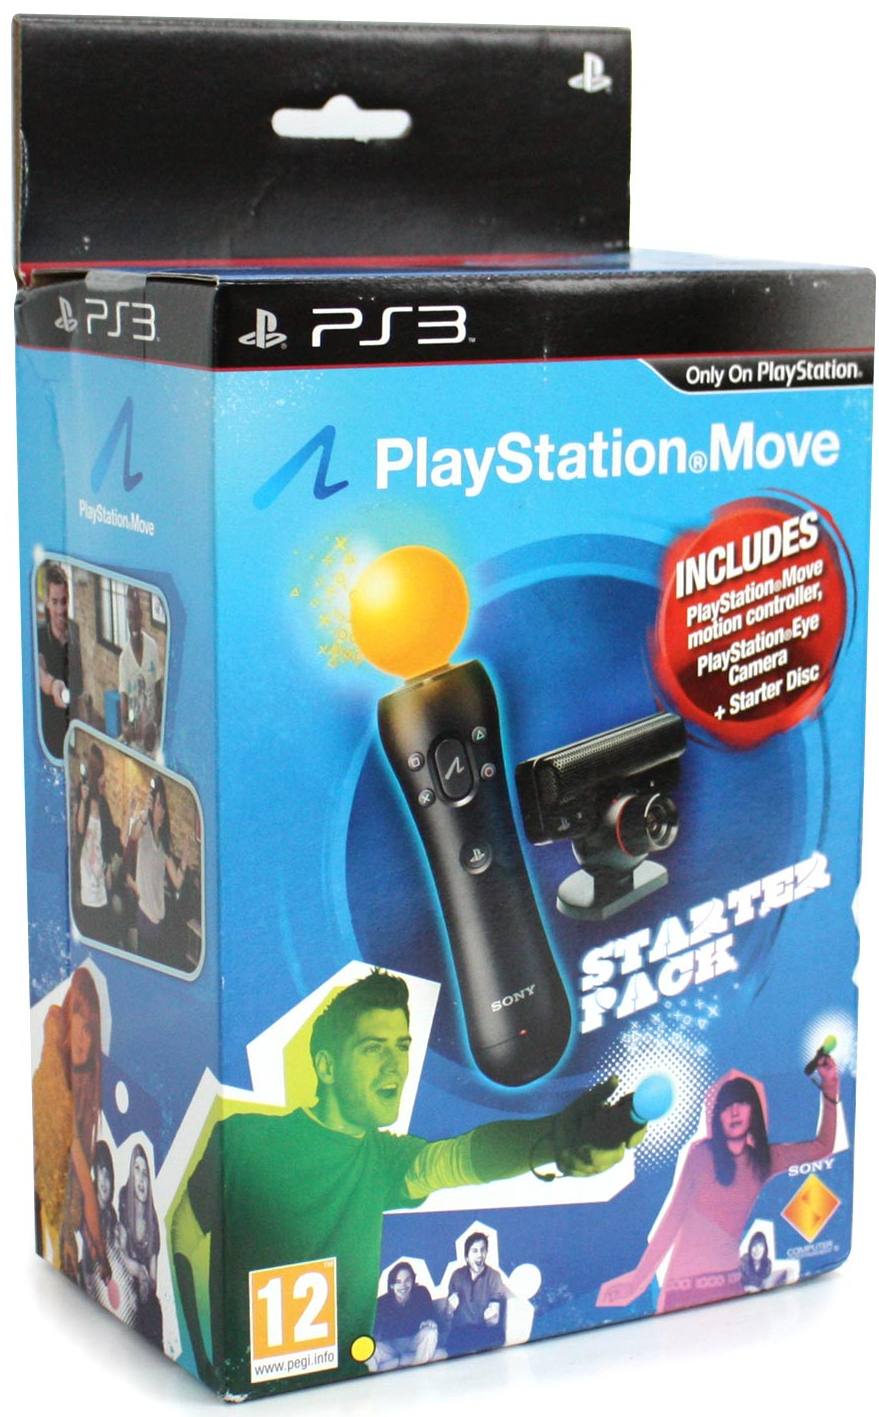 Søndag Hurtig Albany PlayStation Move Starter Pack (Motion Controller Camera with Starter Disc)  for PlayStation 3